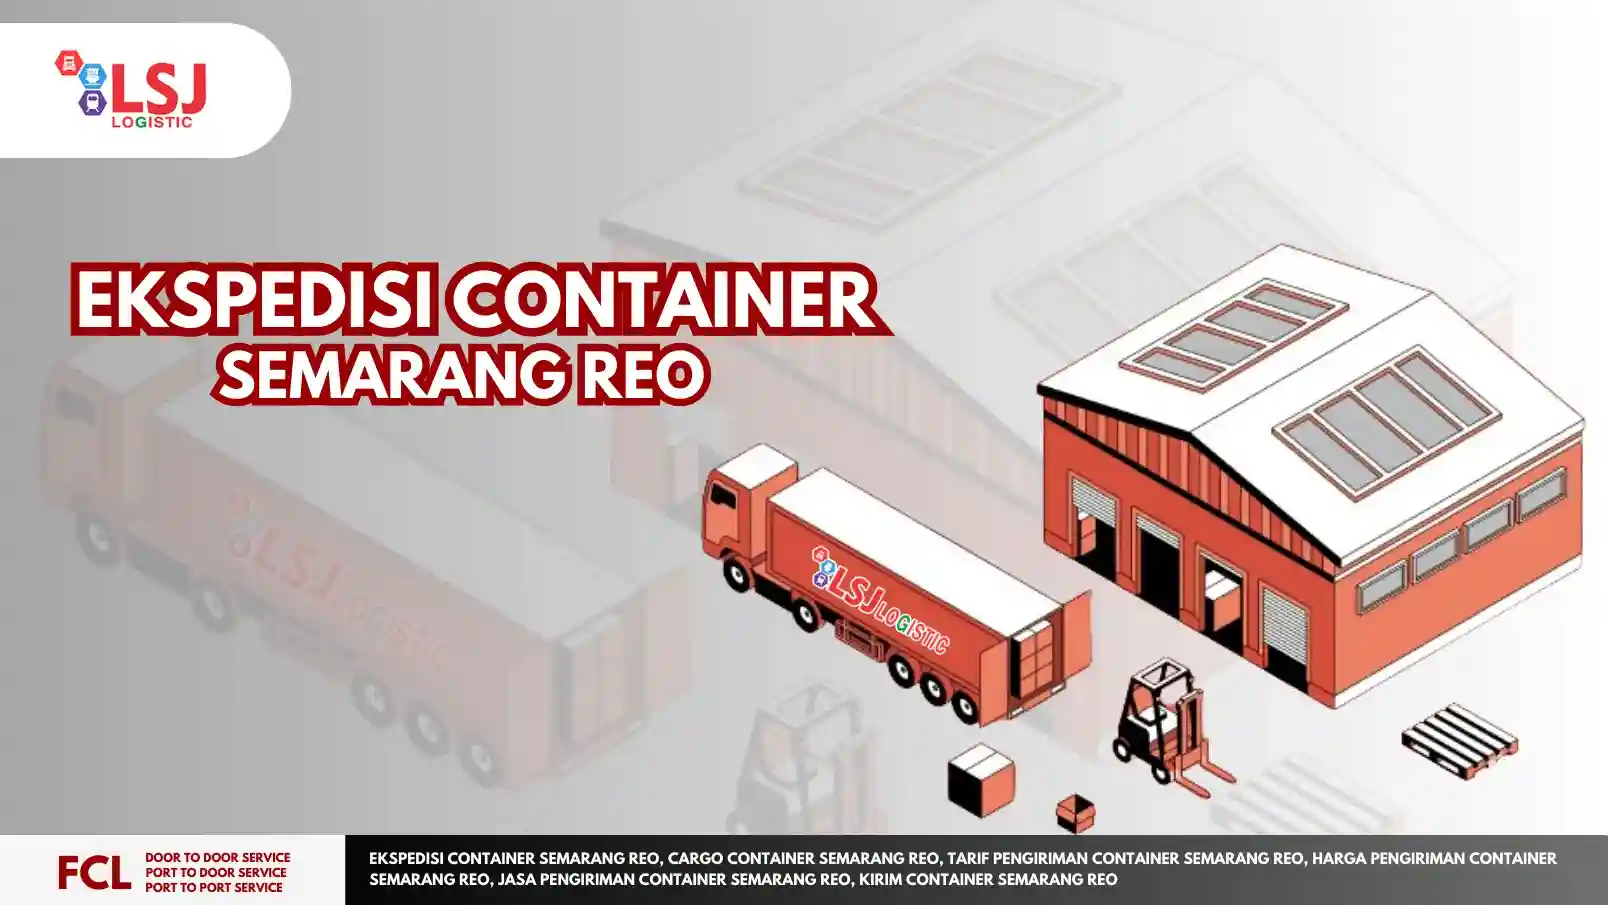 Ekspedisi Container Semarang Reo